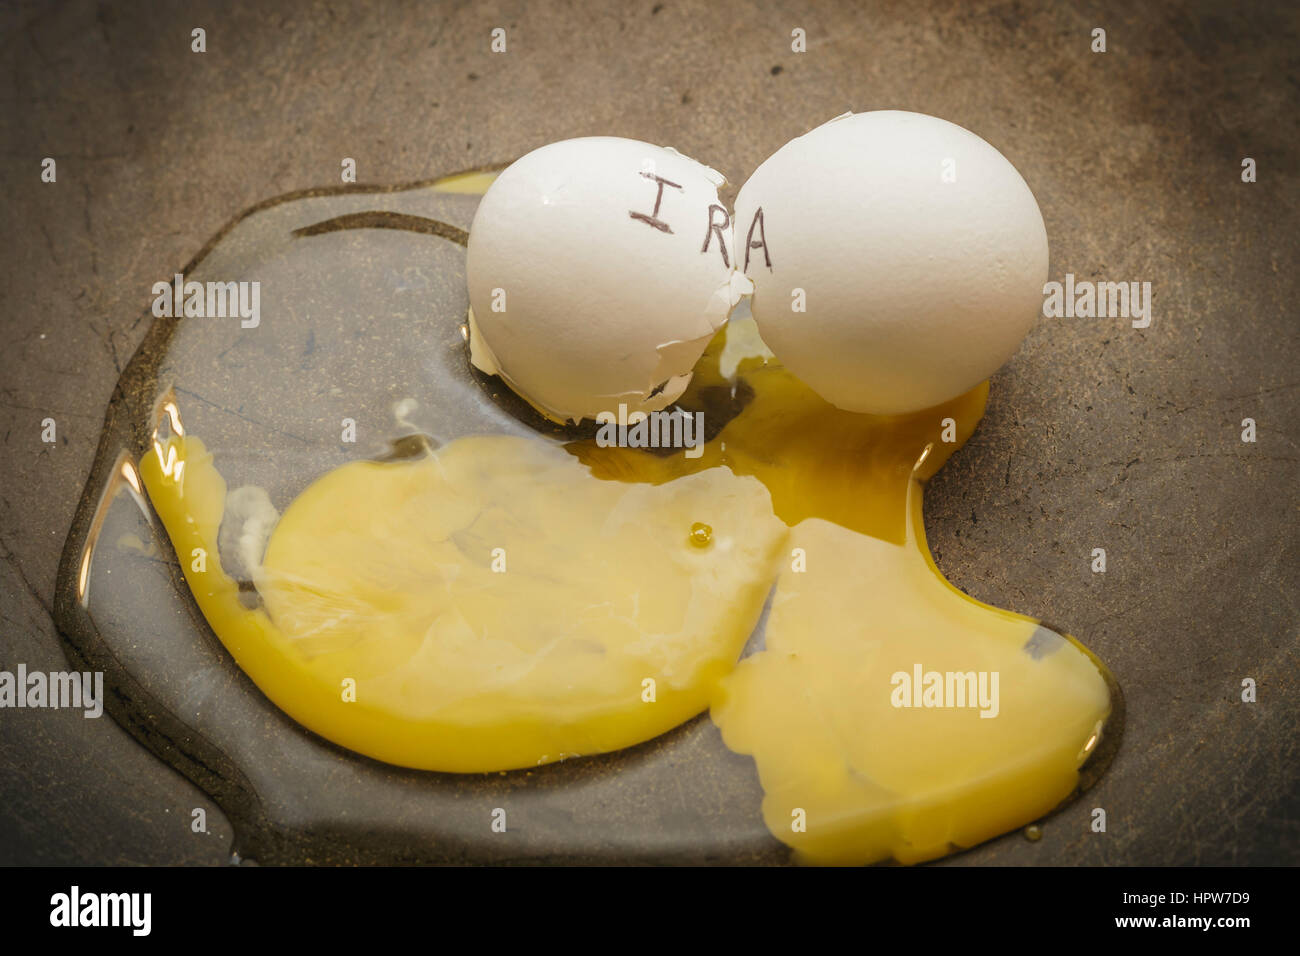 IRA broken nest egg concept Stock Photo